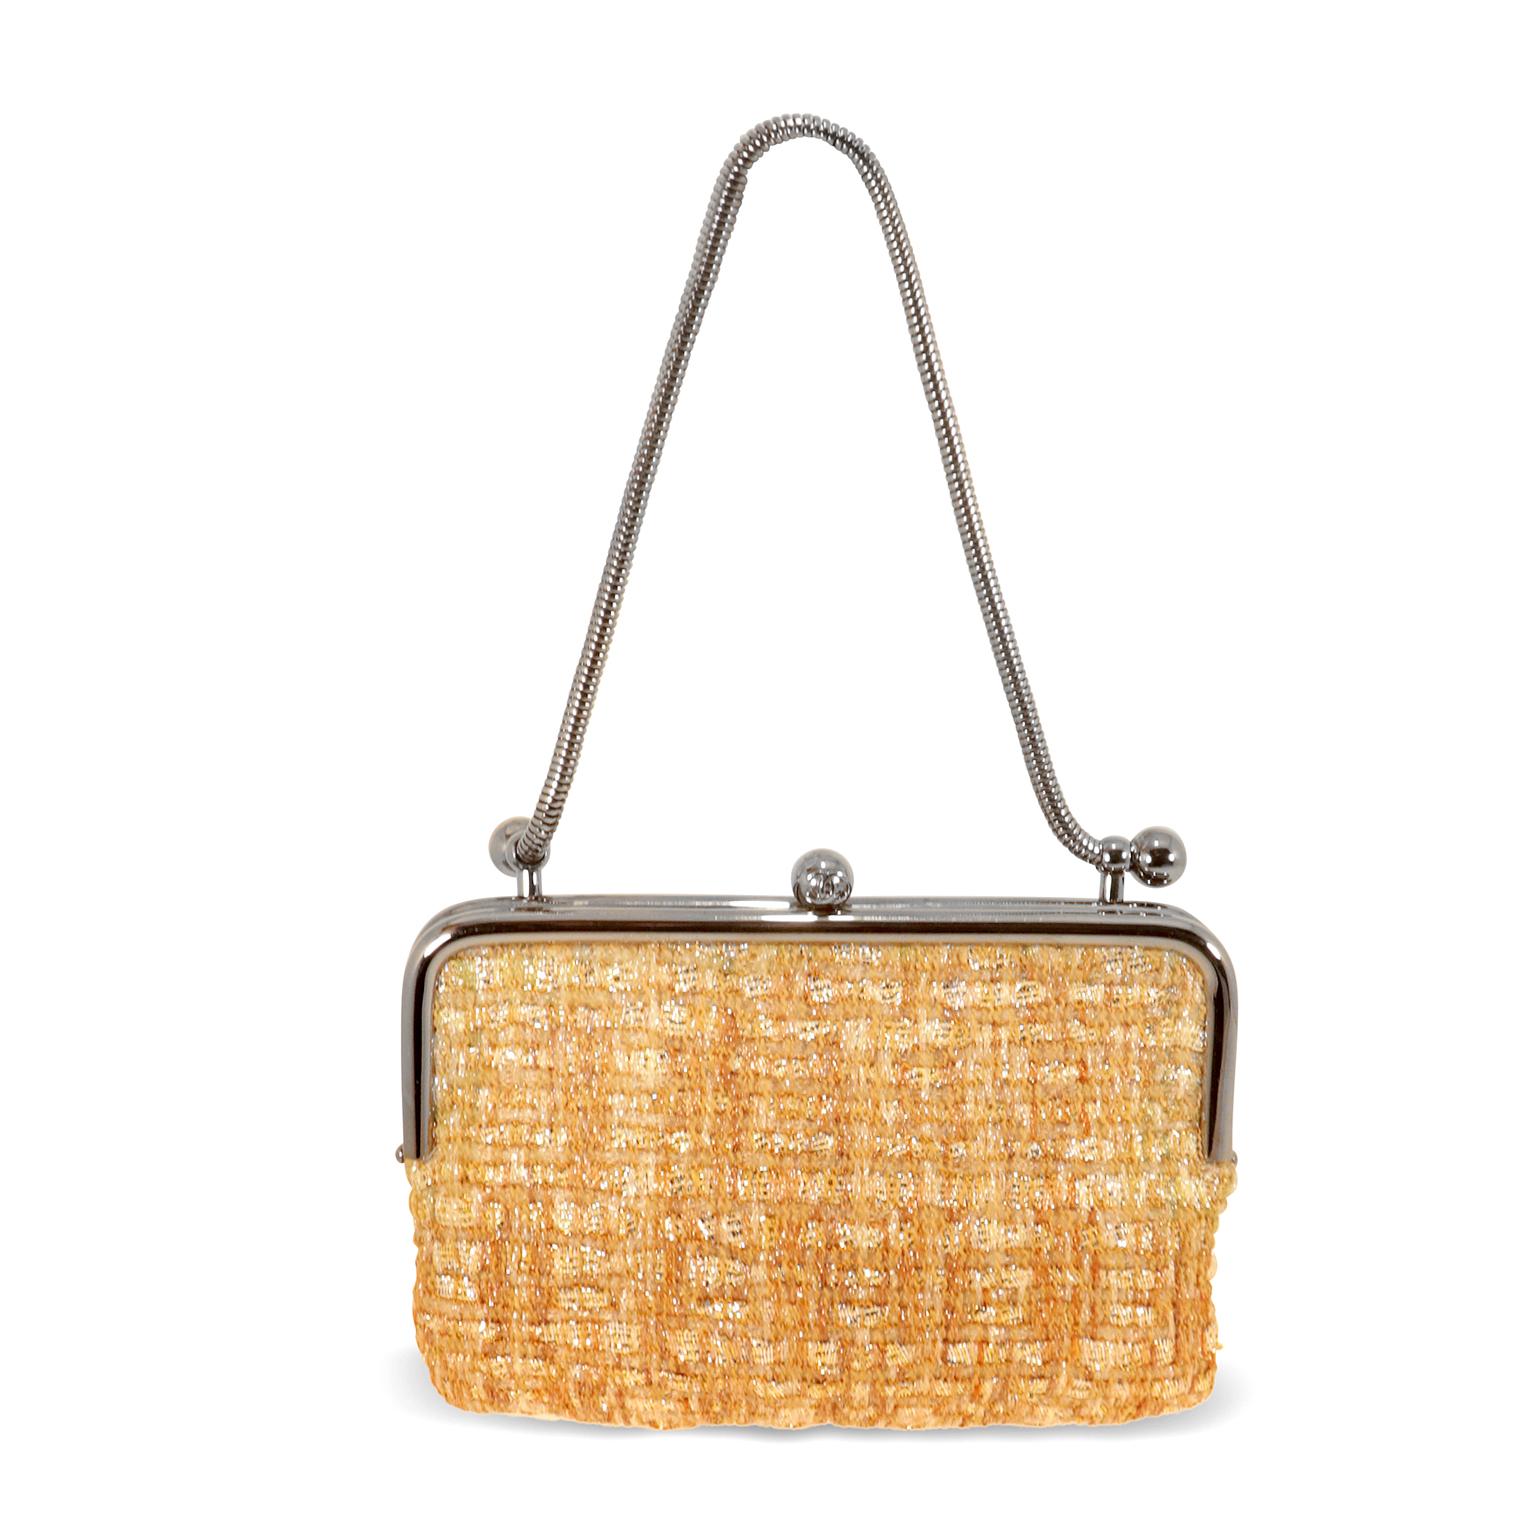 Diese authentische Chanel Gold Tweed Kiss Lock Bag ist in ausgezeichnetem Zustand.  Dieser zierliche und feminine Mini hat einen silbernen Rahmen mit Kussmundverschluss.  Der kurze silberne Schlangenkettenriemen kann in der Hand oder am Ellbogen